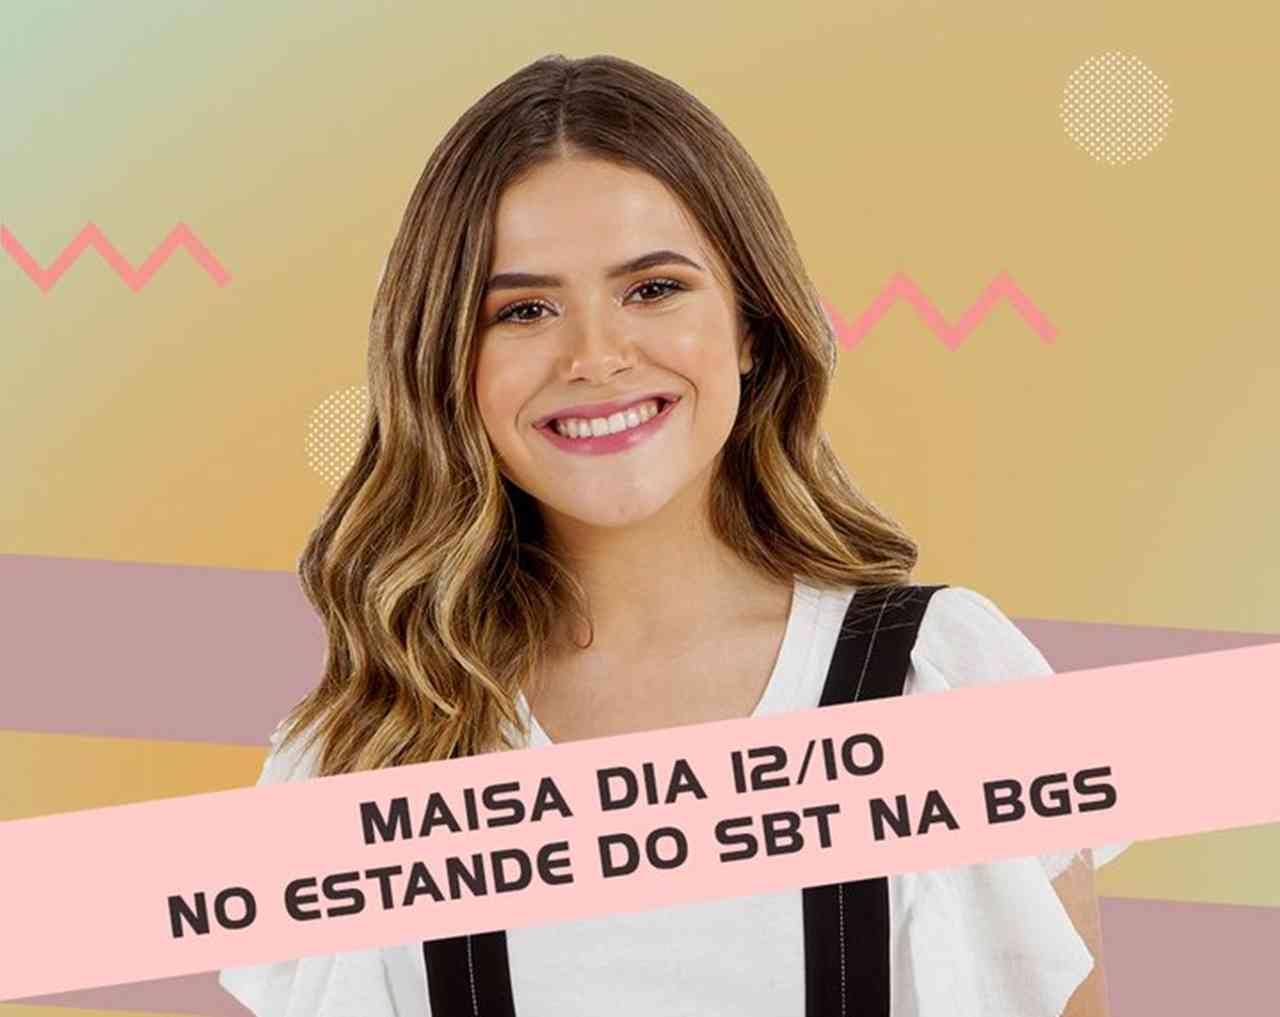 BGS 2019 | Maísa estará presente no evento 2023 Viciados